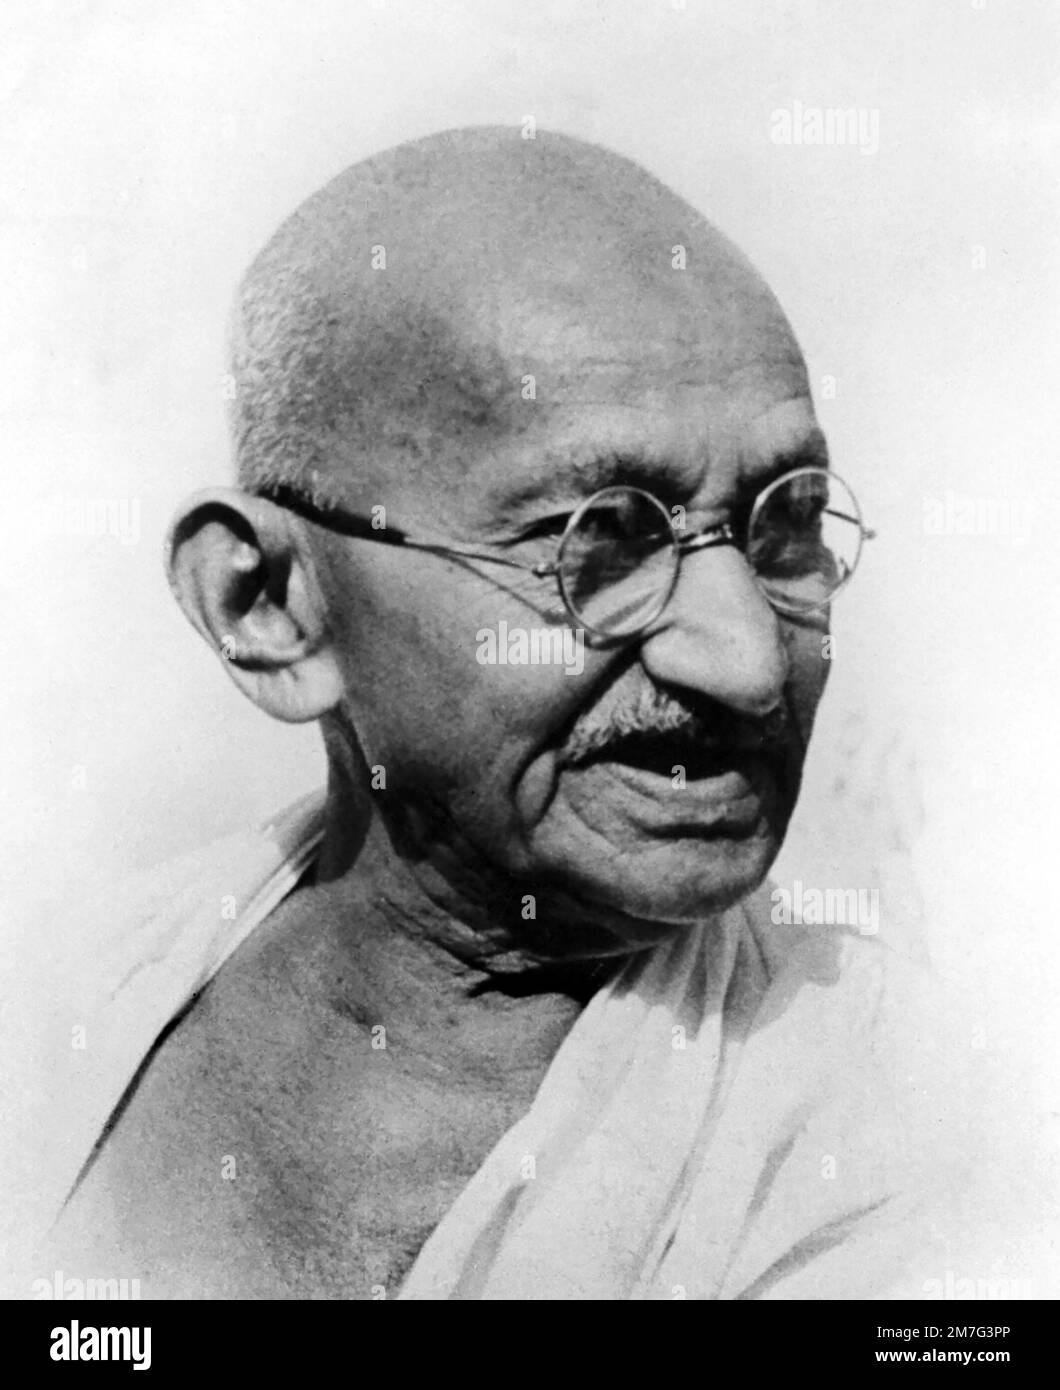 A cargo de Mahatma Gandhi. Retrato de Mohandas Karamchand Gandhi (1869-1948), ampliamente conocido como Mahatma Gandhi. Fotografía muy probablemente tomada a principios de la década de 1940s Foto de stock